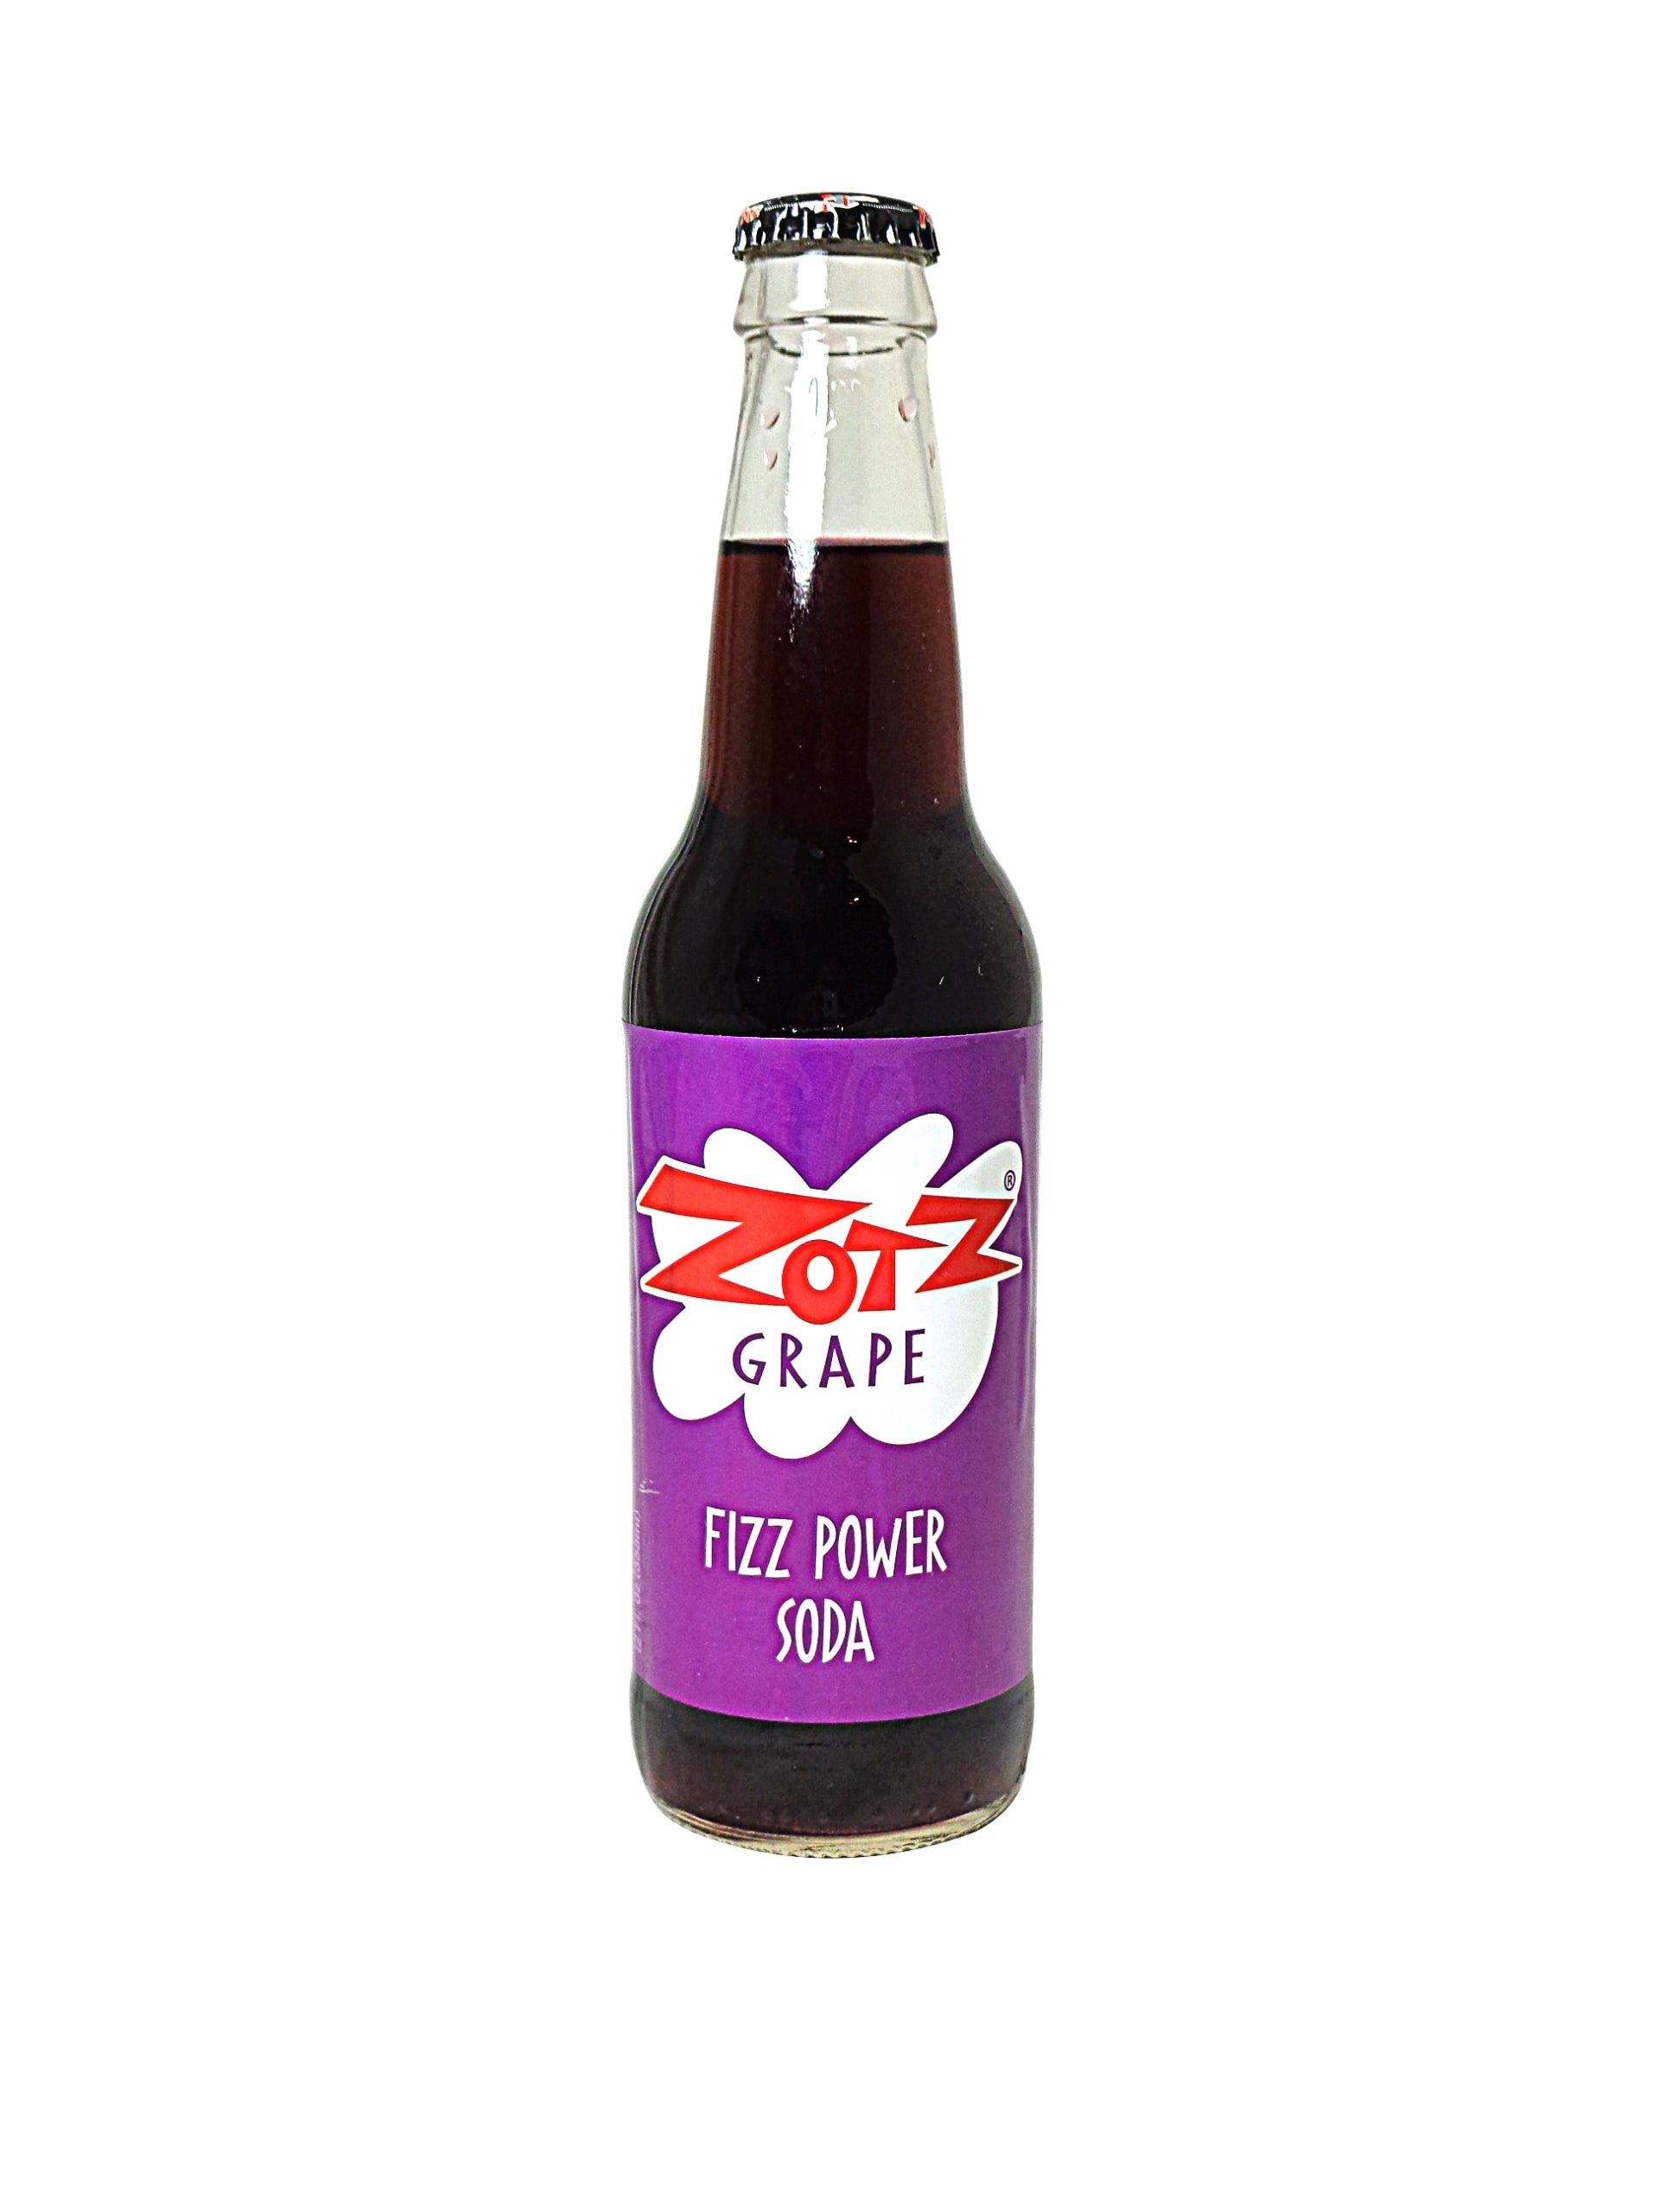 Zotz Grape Fizz Power Soda - Soda Pop Bros Soda